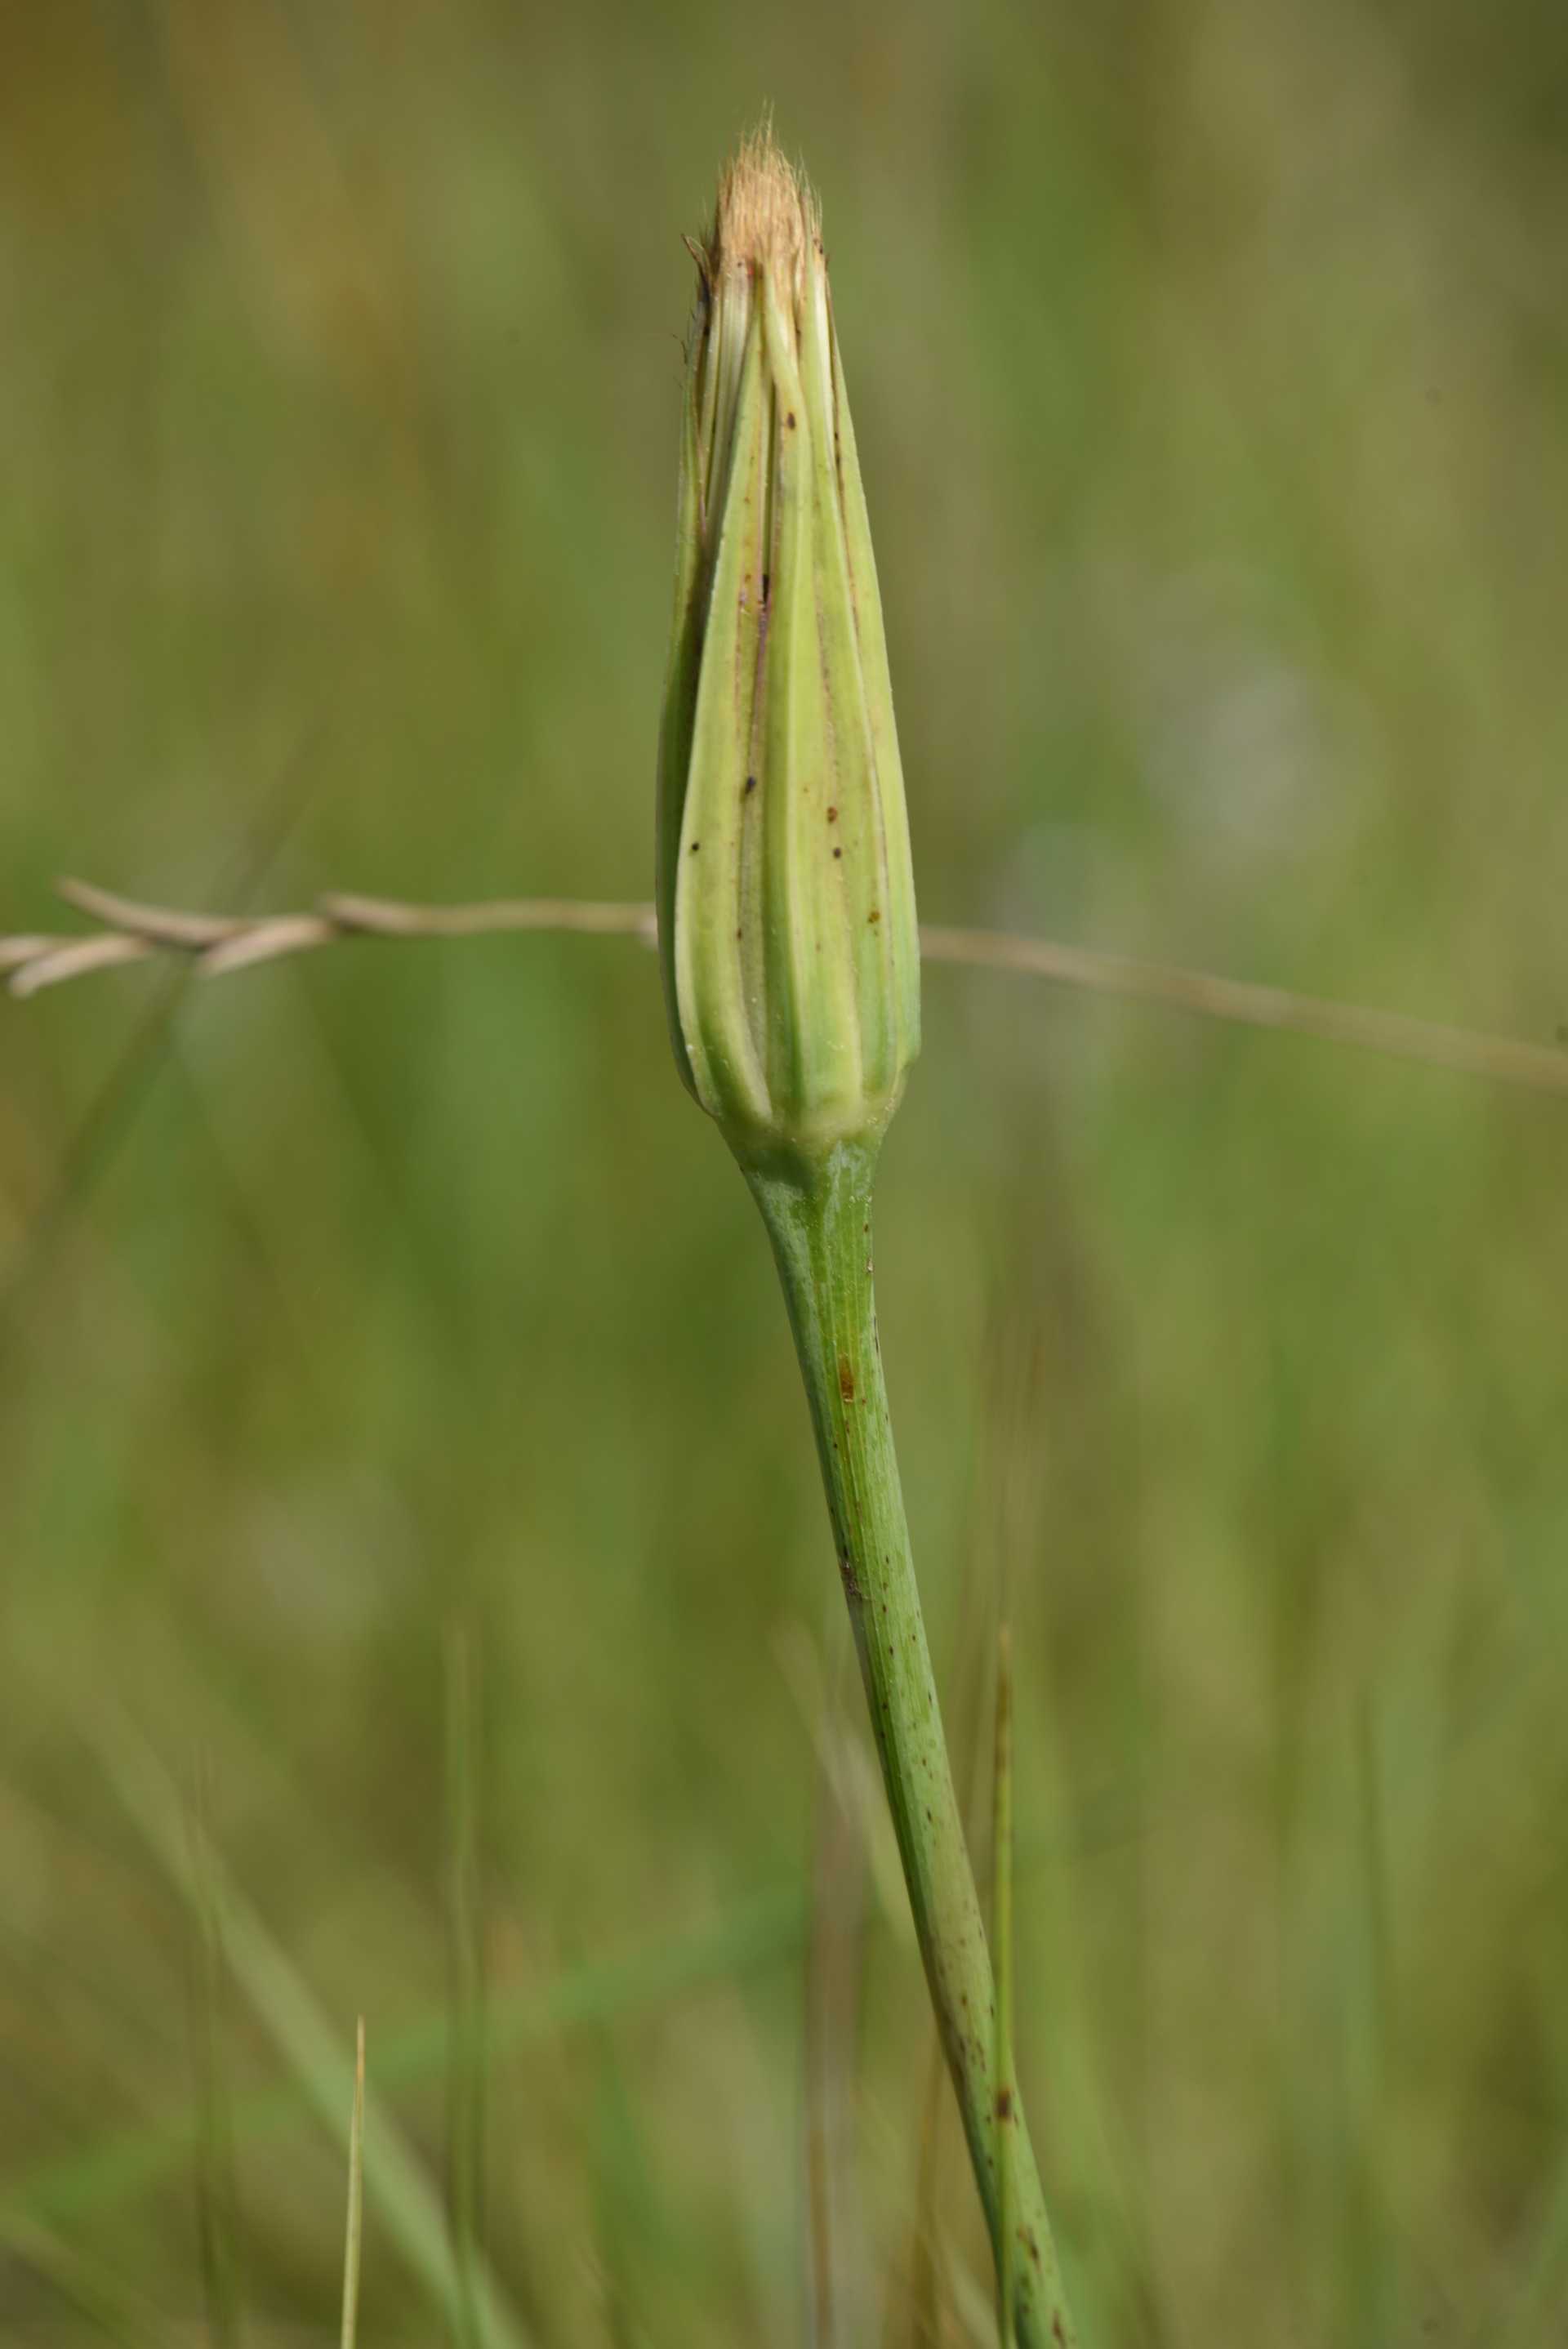 La scorzonera bianca, la pianta dalla radice ricca di inulina